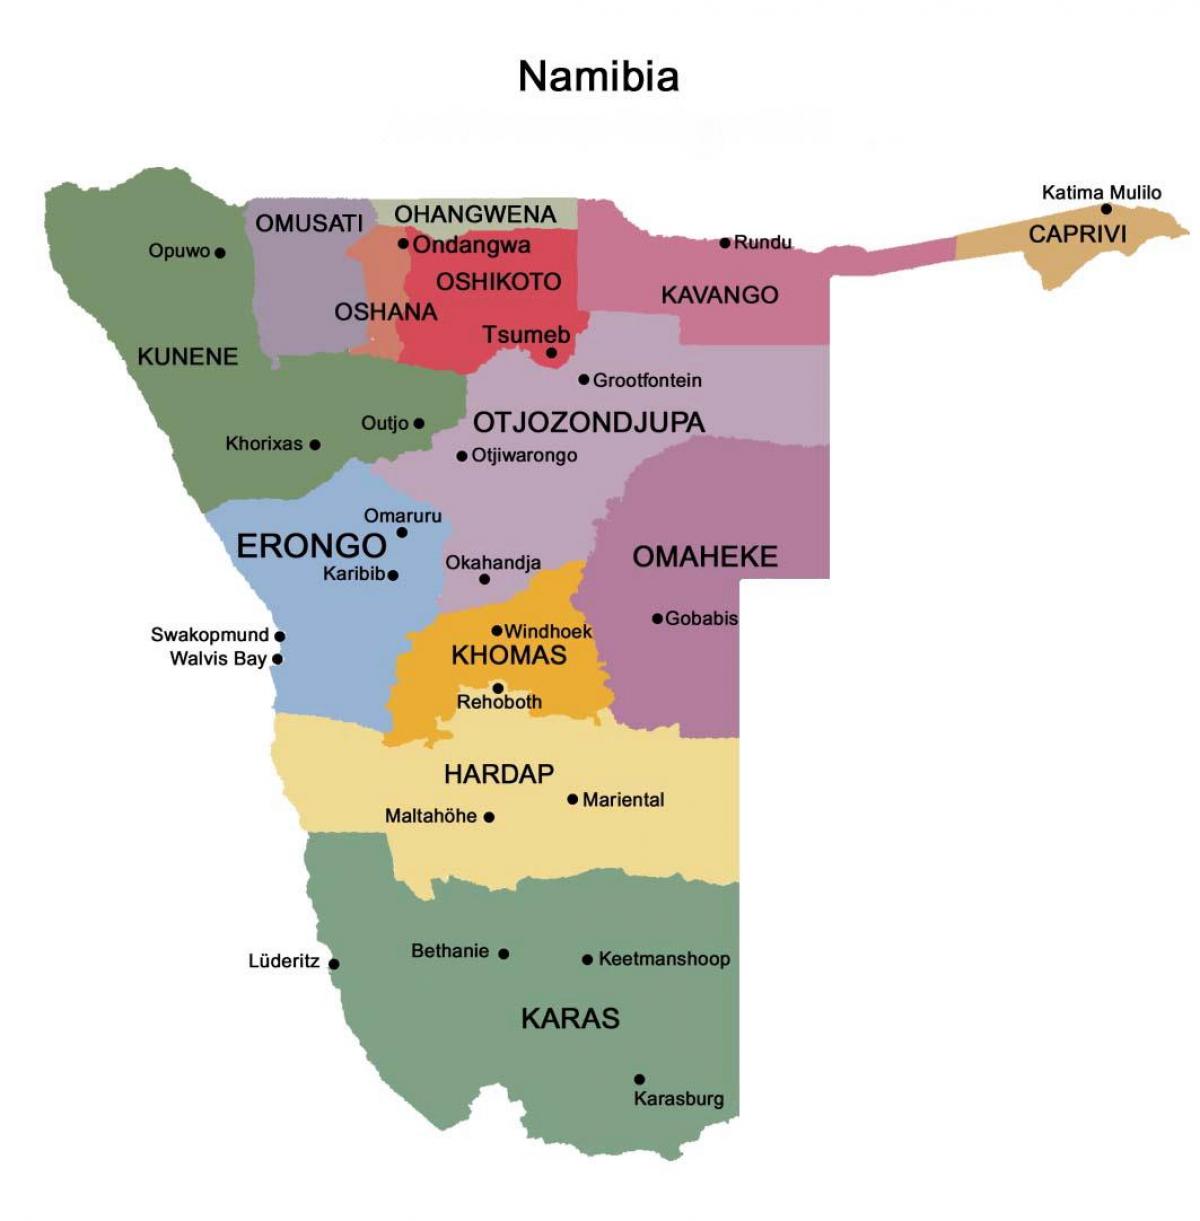 Mapa da Namíbia com regiões